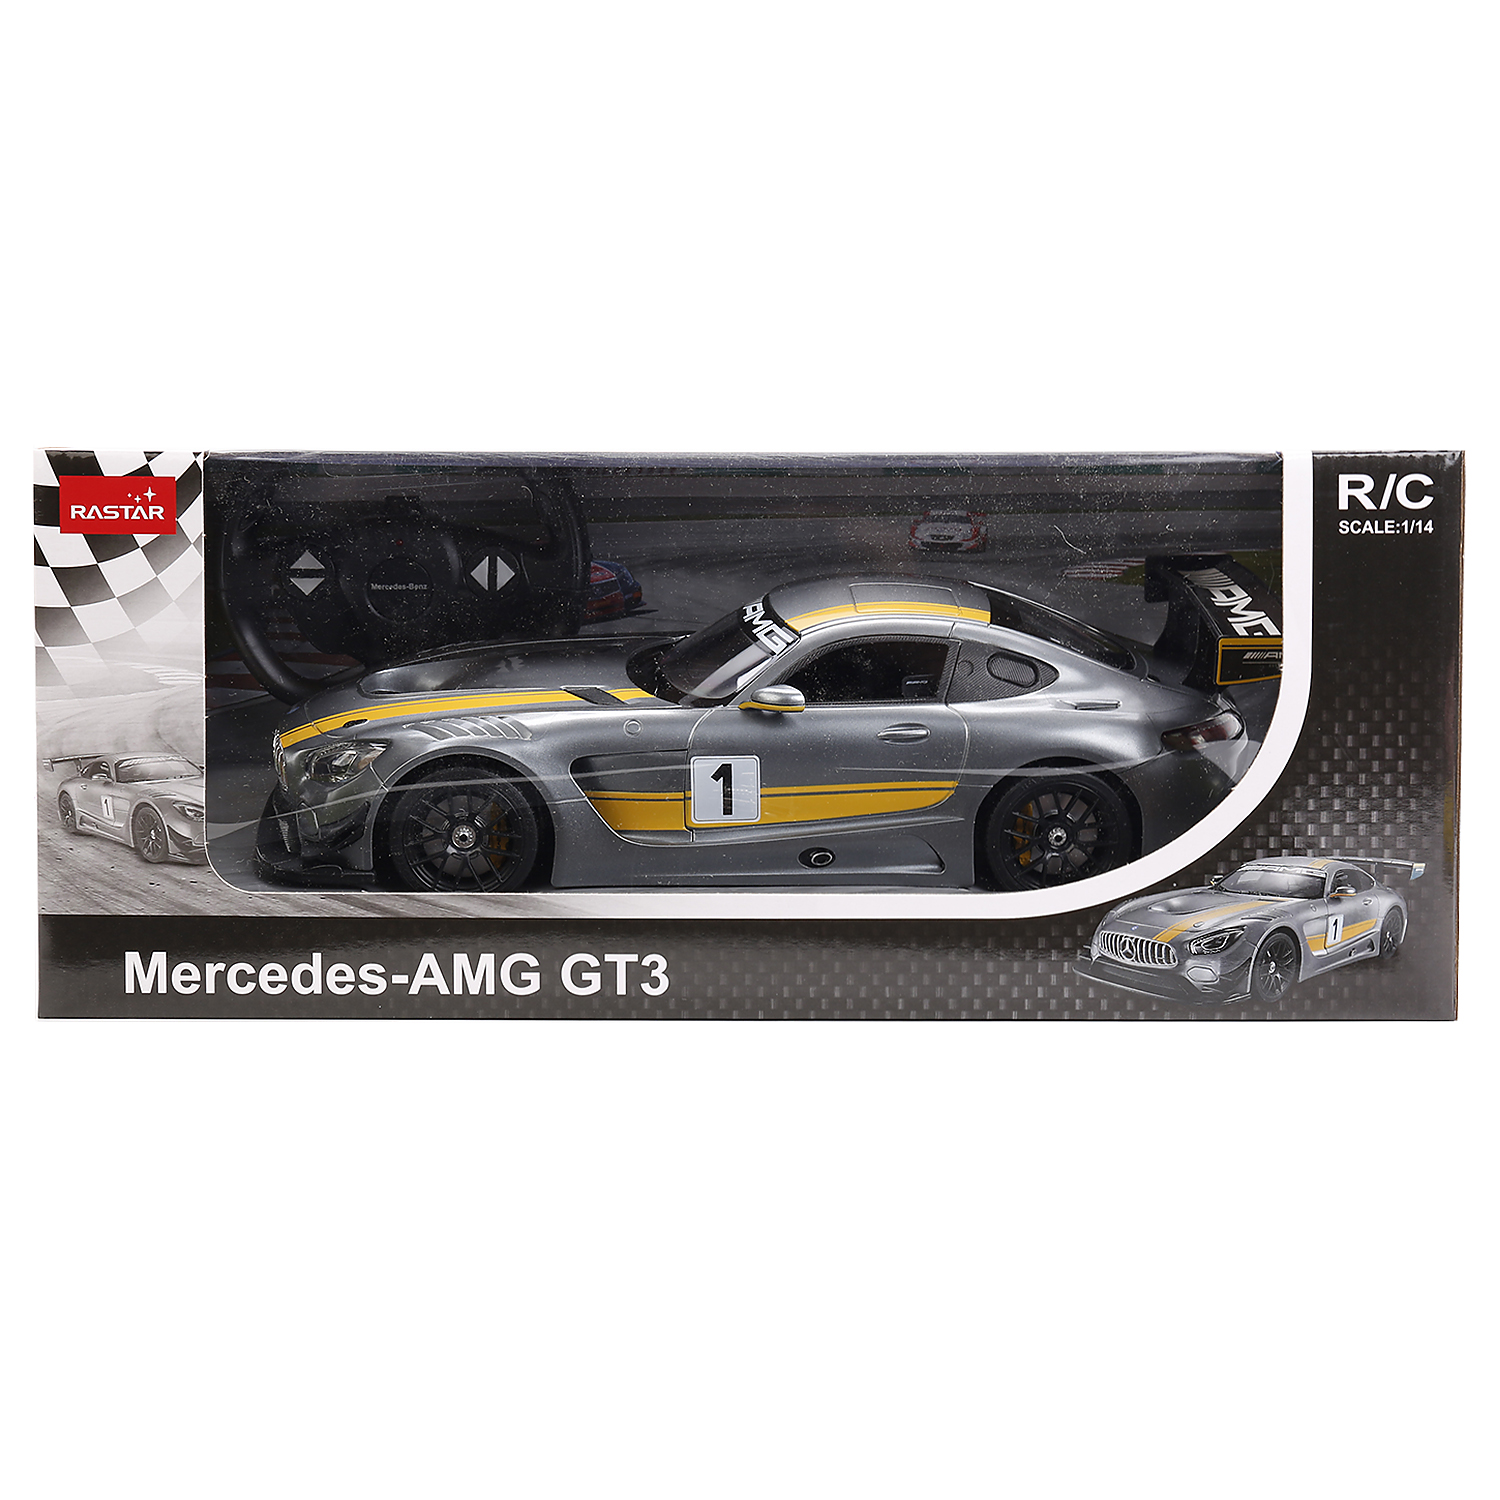  / RASTAR MERCEDES AMG GT3 PERFORMANCE R/C 1:14    .  .6